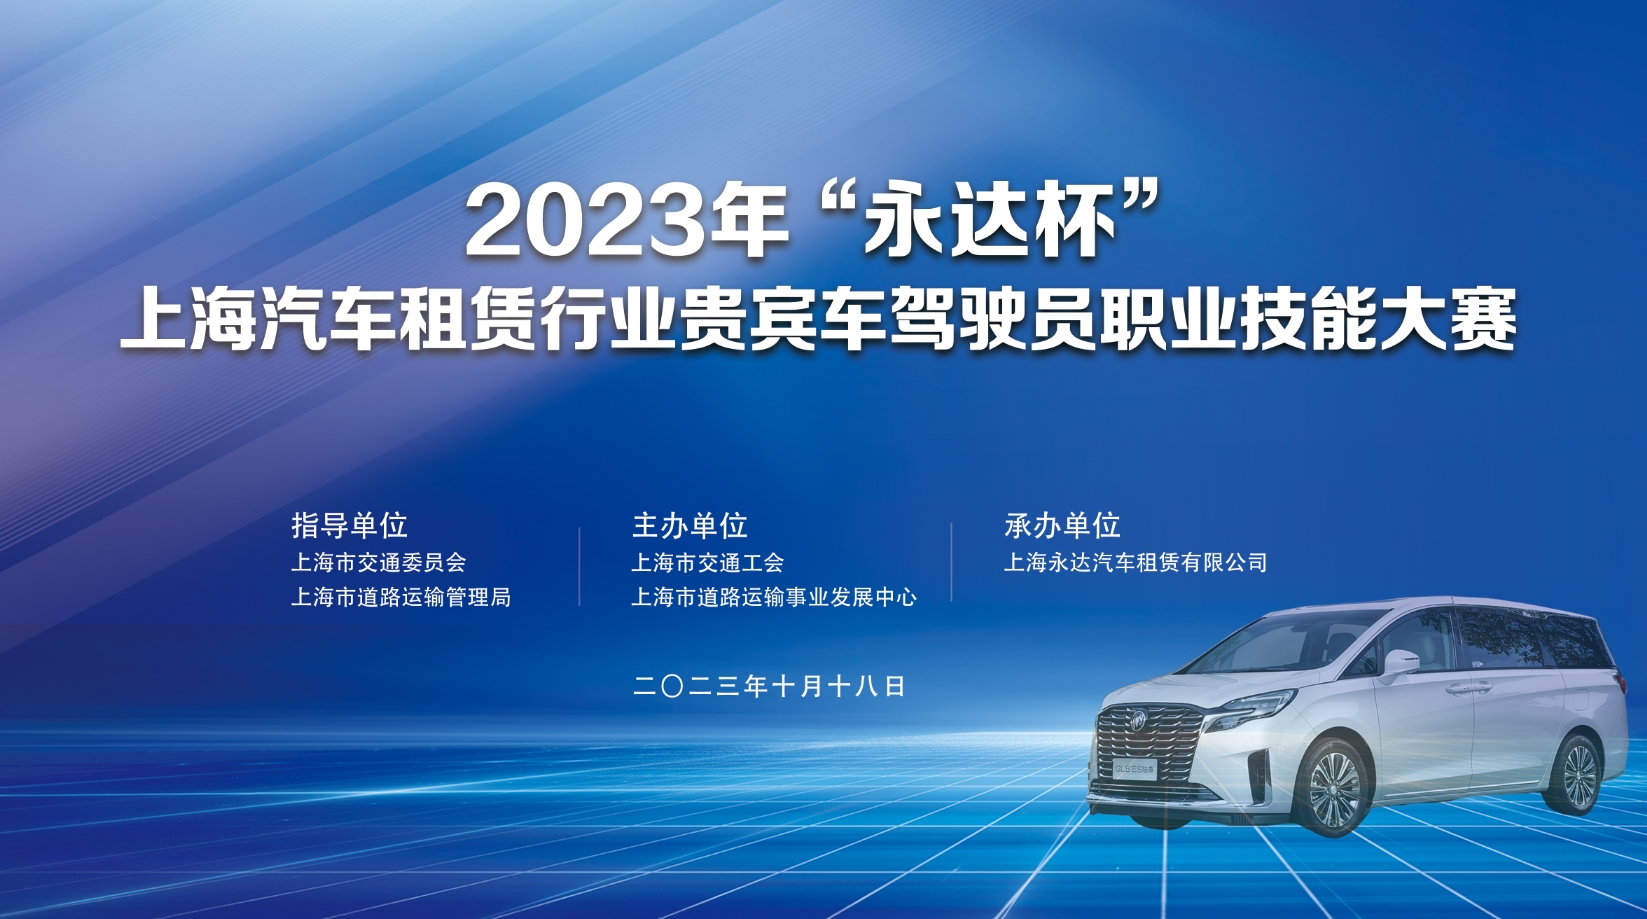 2023年“永达杯”上海汽车租赁行业贵宾车驾驶员职业技能大赛 案例展示 第1张